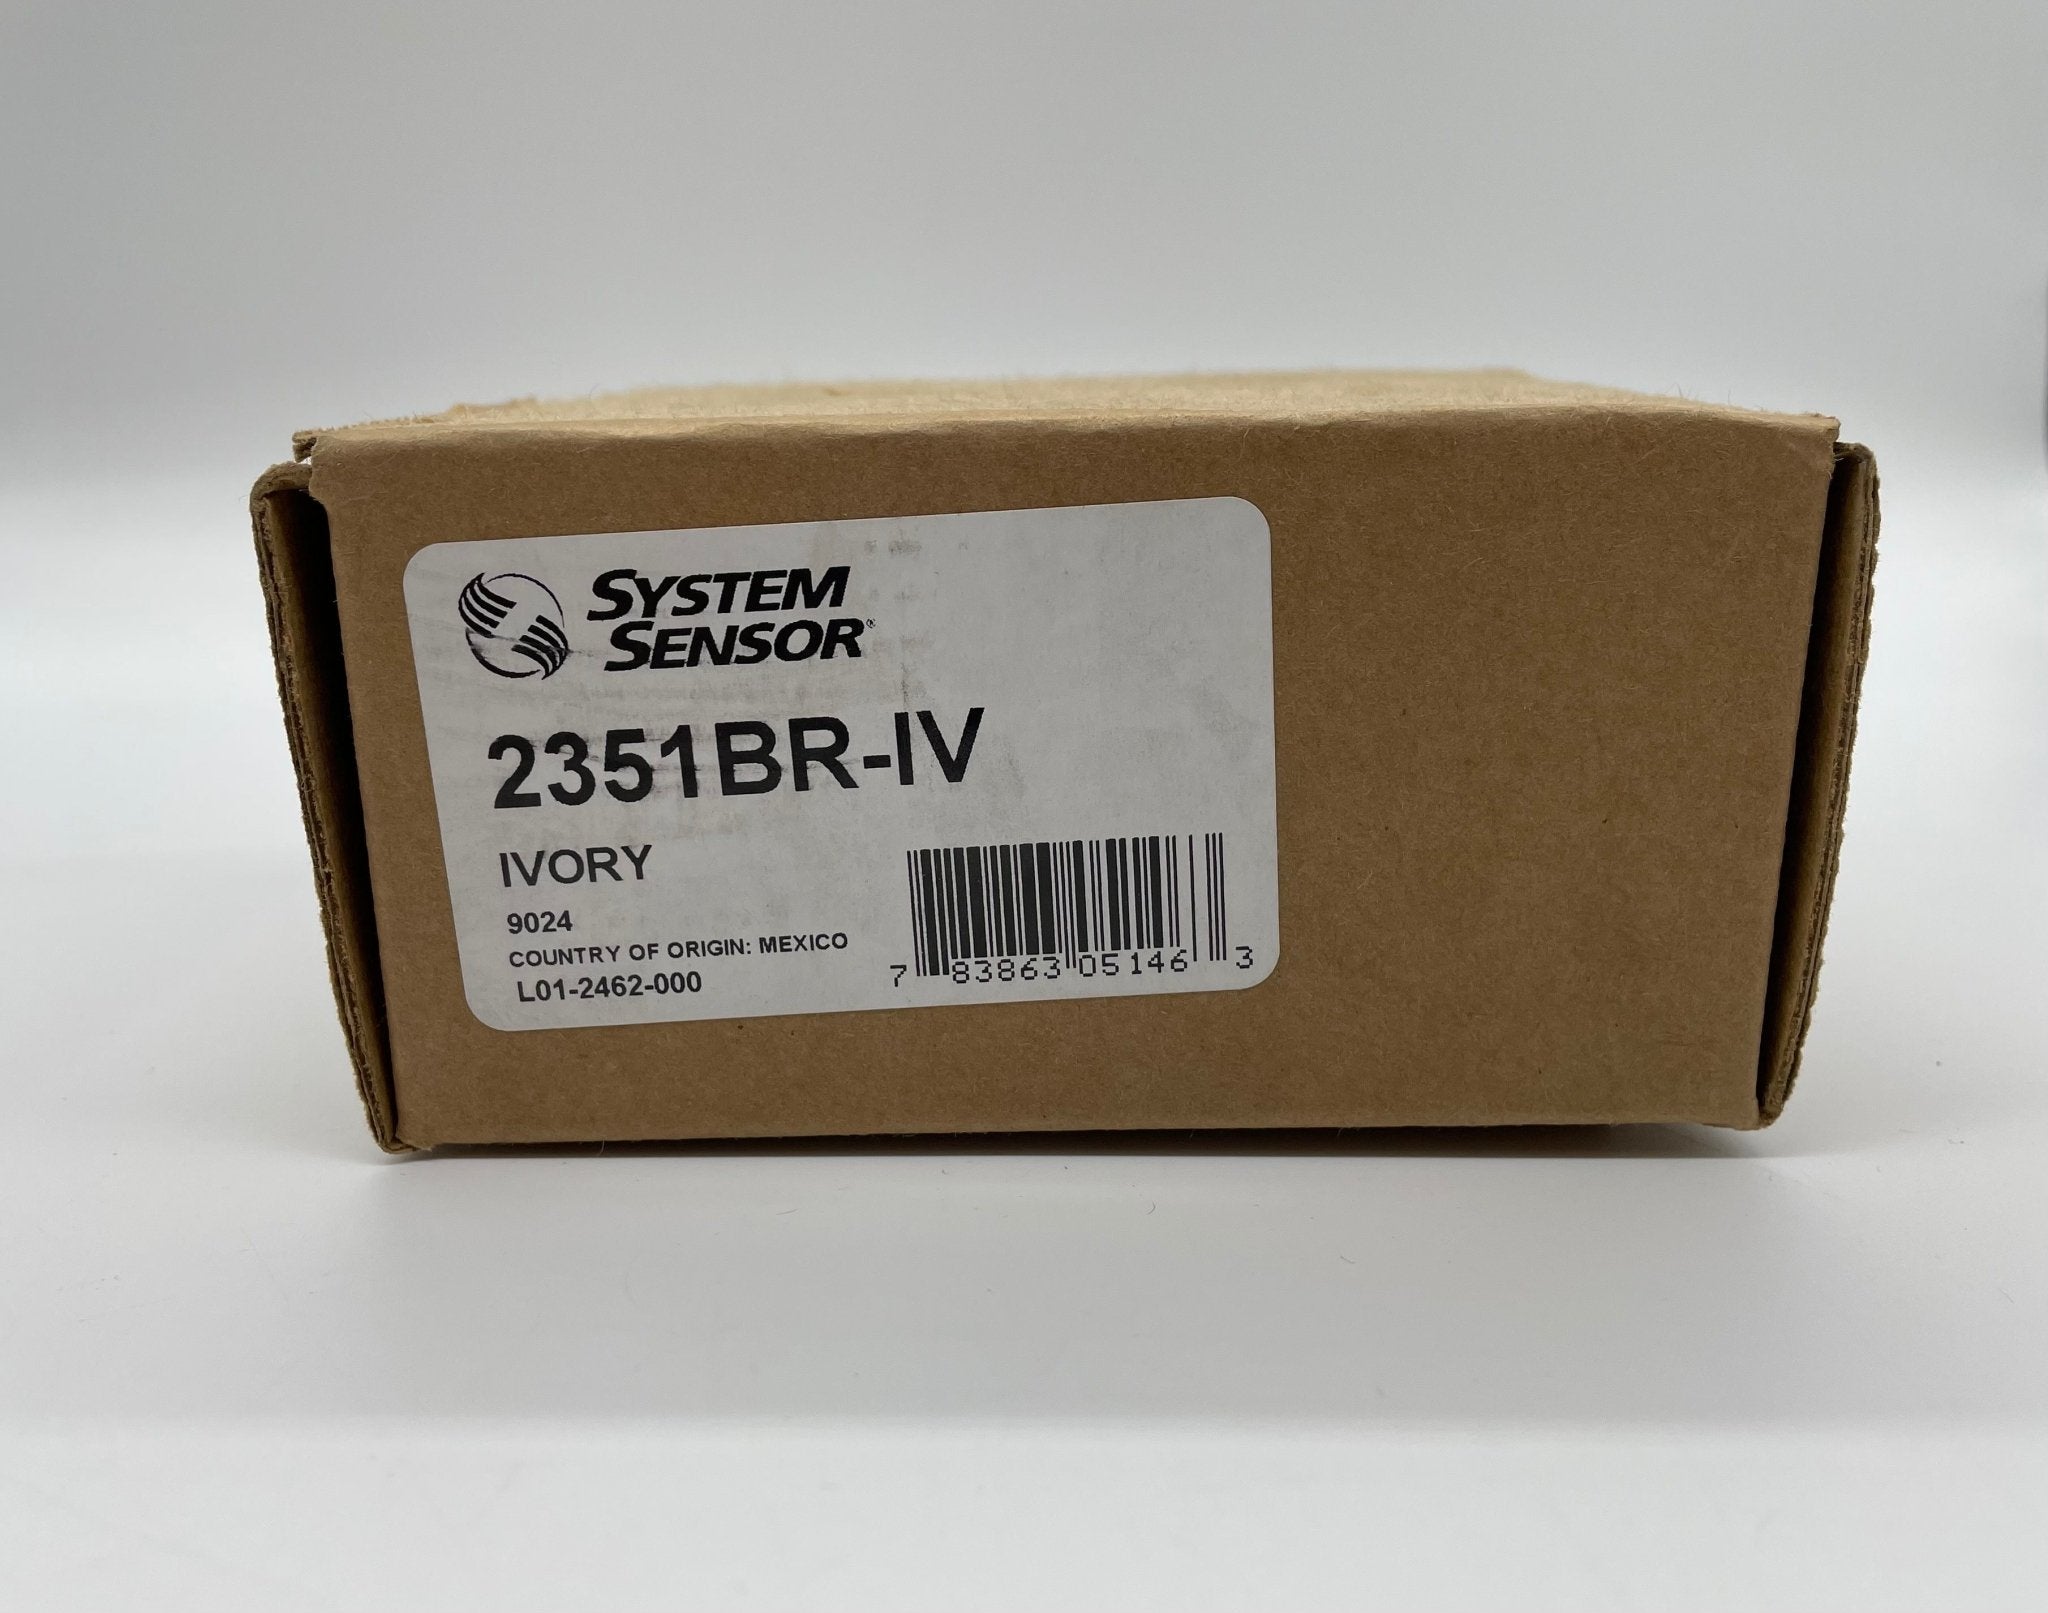 System Sensor 2351BR-IV - The Fire Alarm Supplier